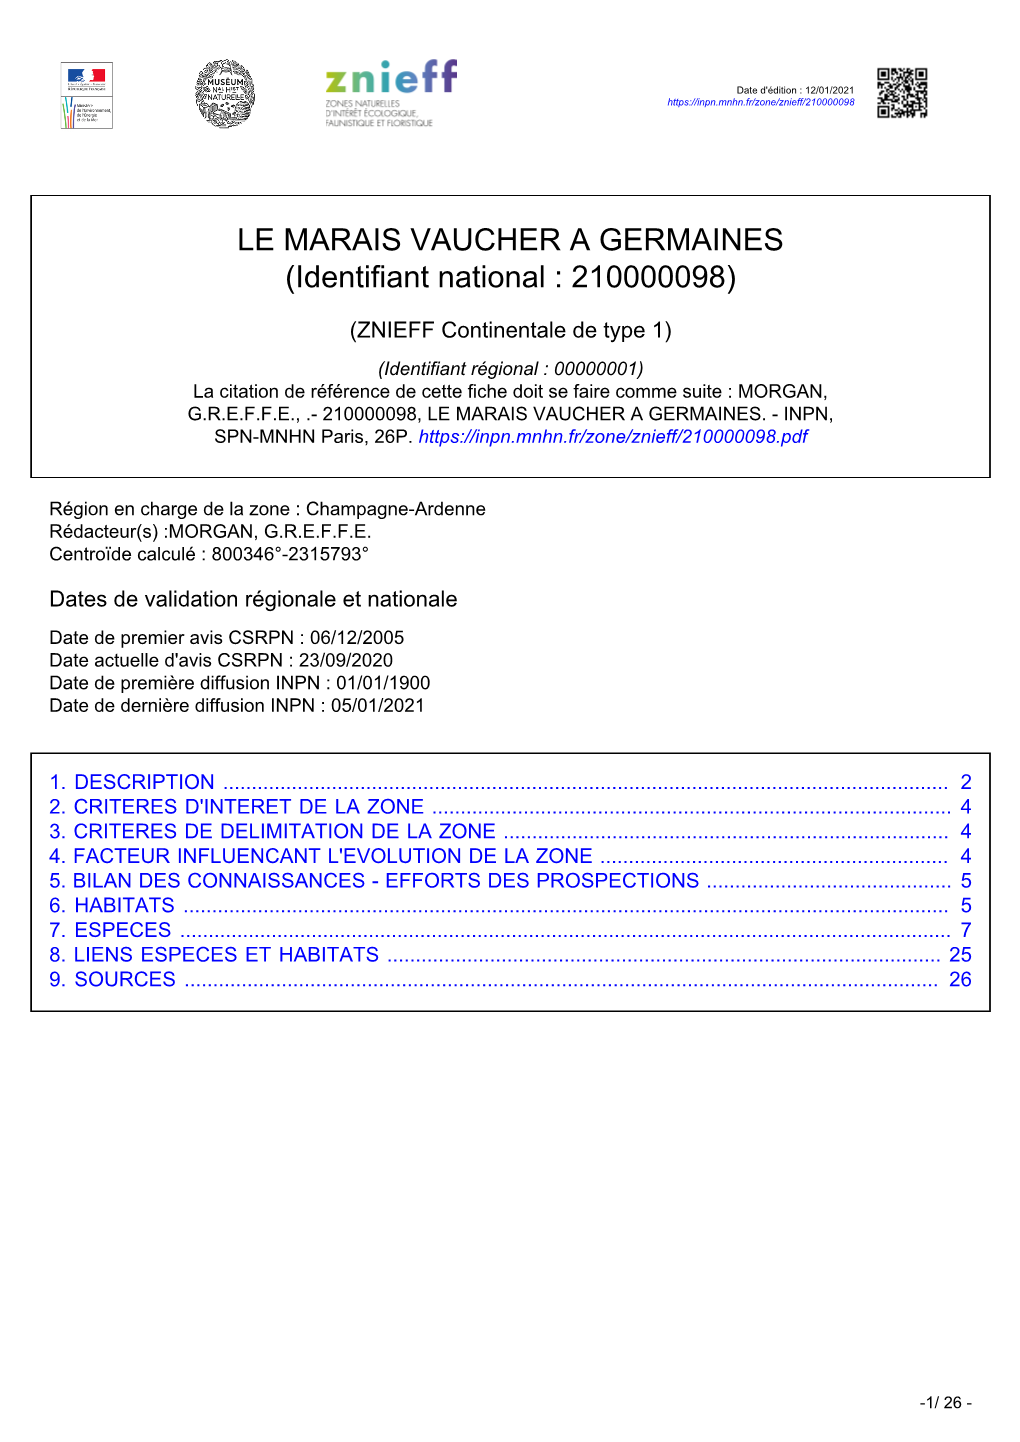 LE MARAIS VAUCHER a GERMAINES (Identifiant National : 210000098)